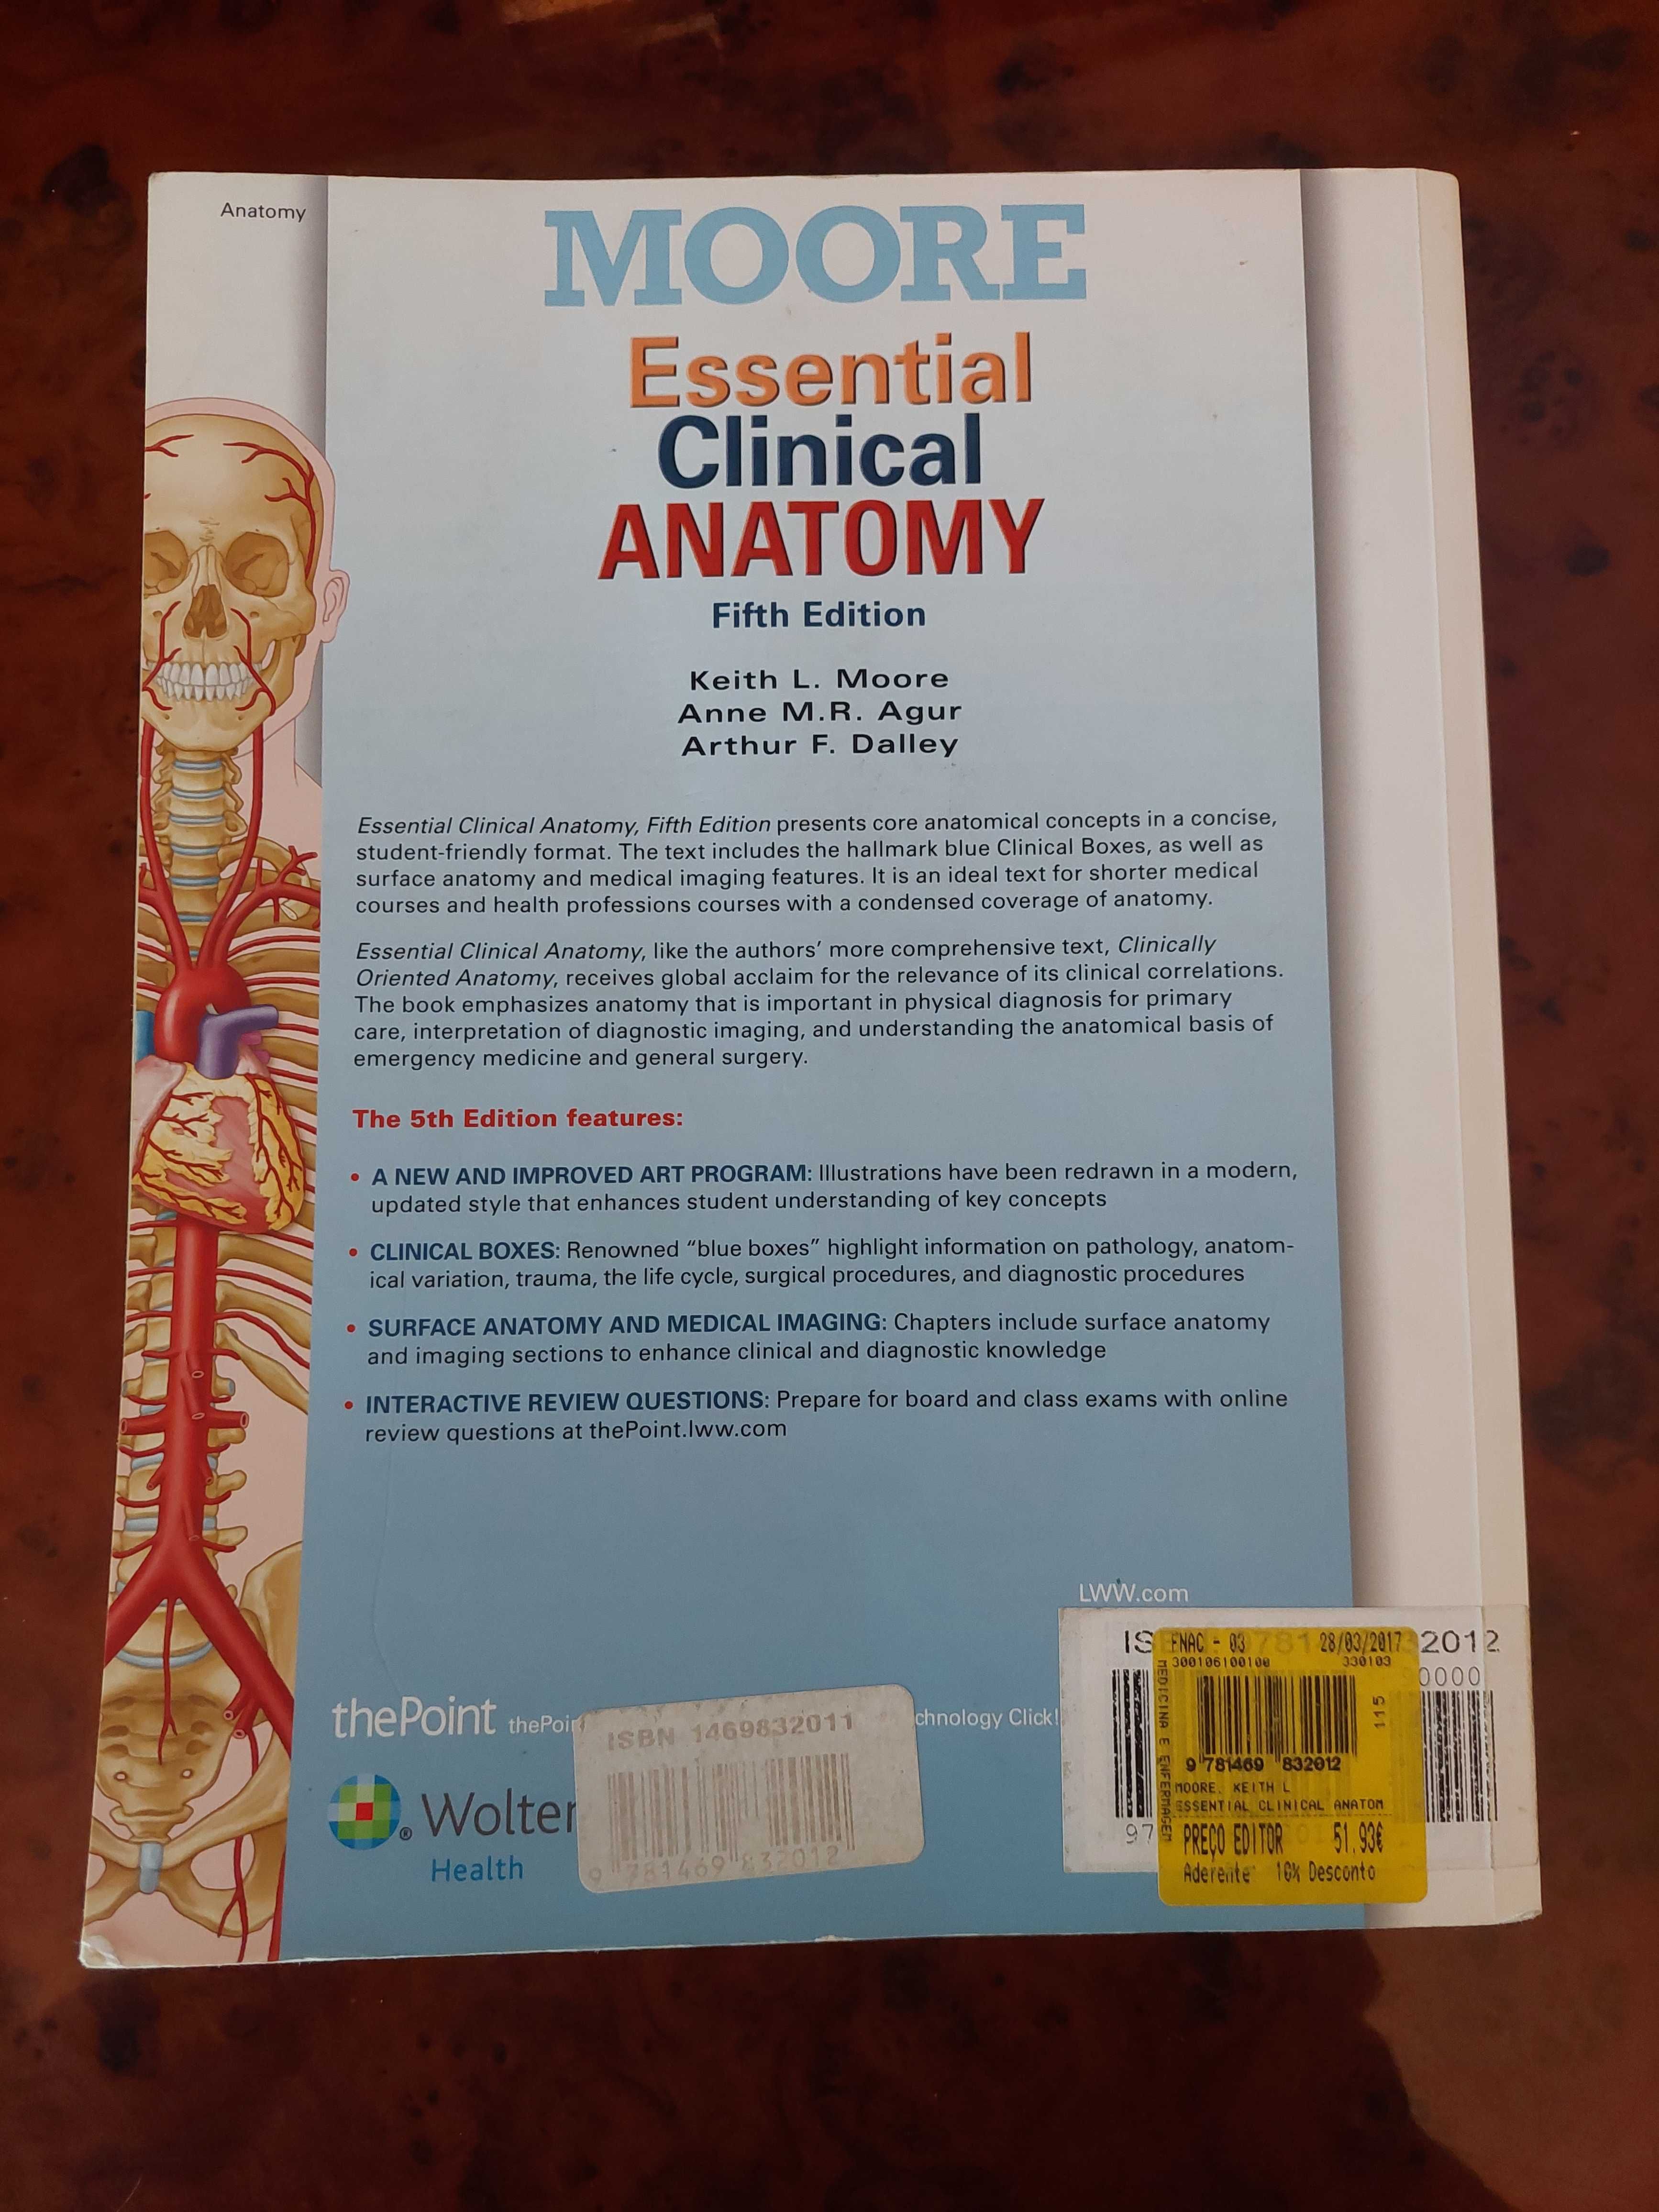 Essential Clinical Anatomy